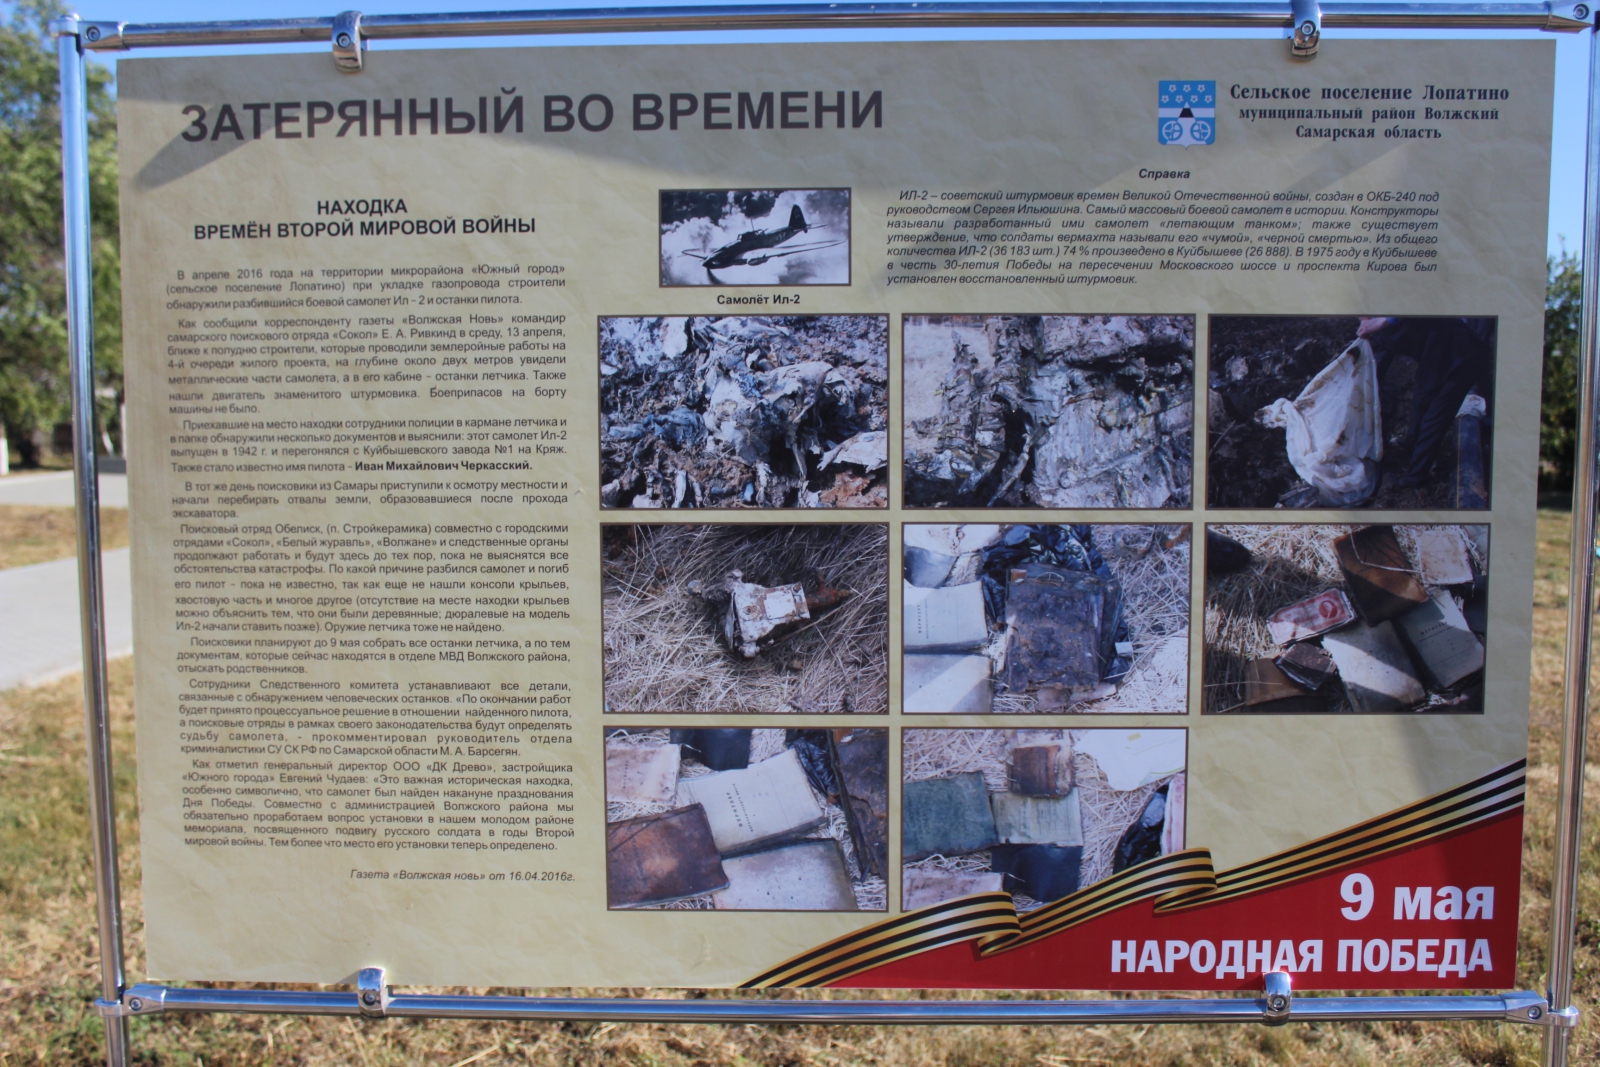 Погода в придорожном самарской. Памятники погибшим пилотам. В Волжском районе Самарской области нашли захоронение.